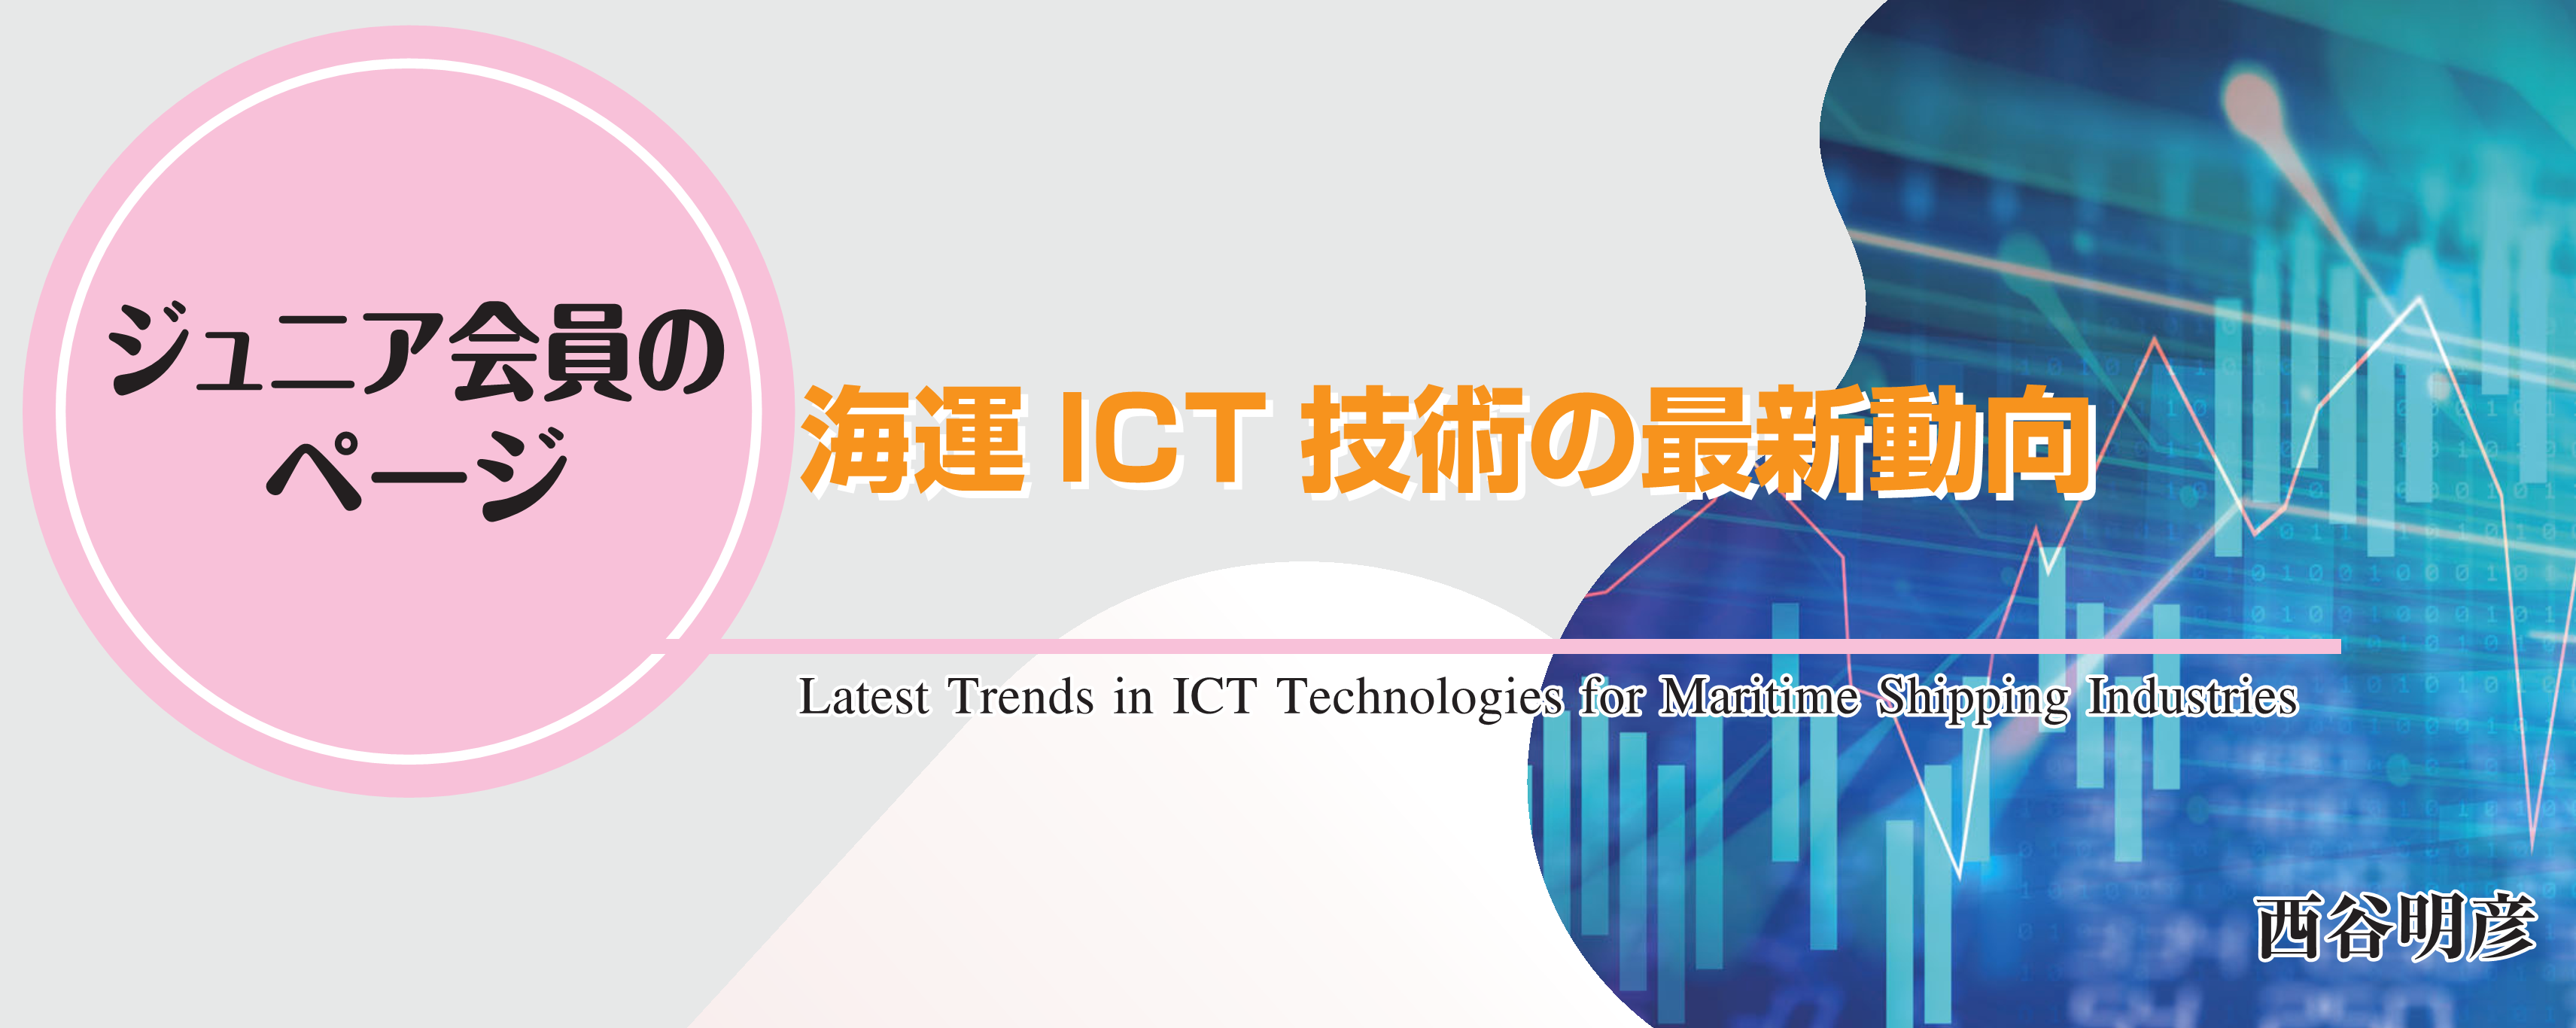 ジュニア会員のページ 海運ICT技術の最新動向 Latest Trends in ICT Technologies for Maritime Shipping Industries 西谷明彦